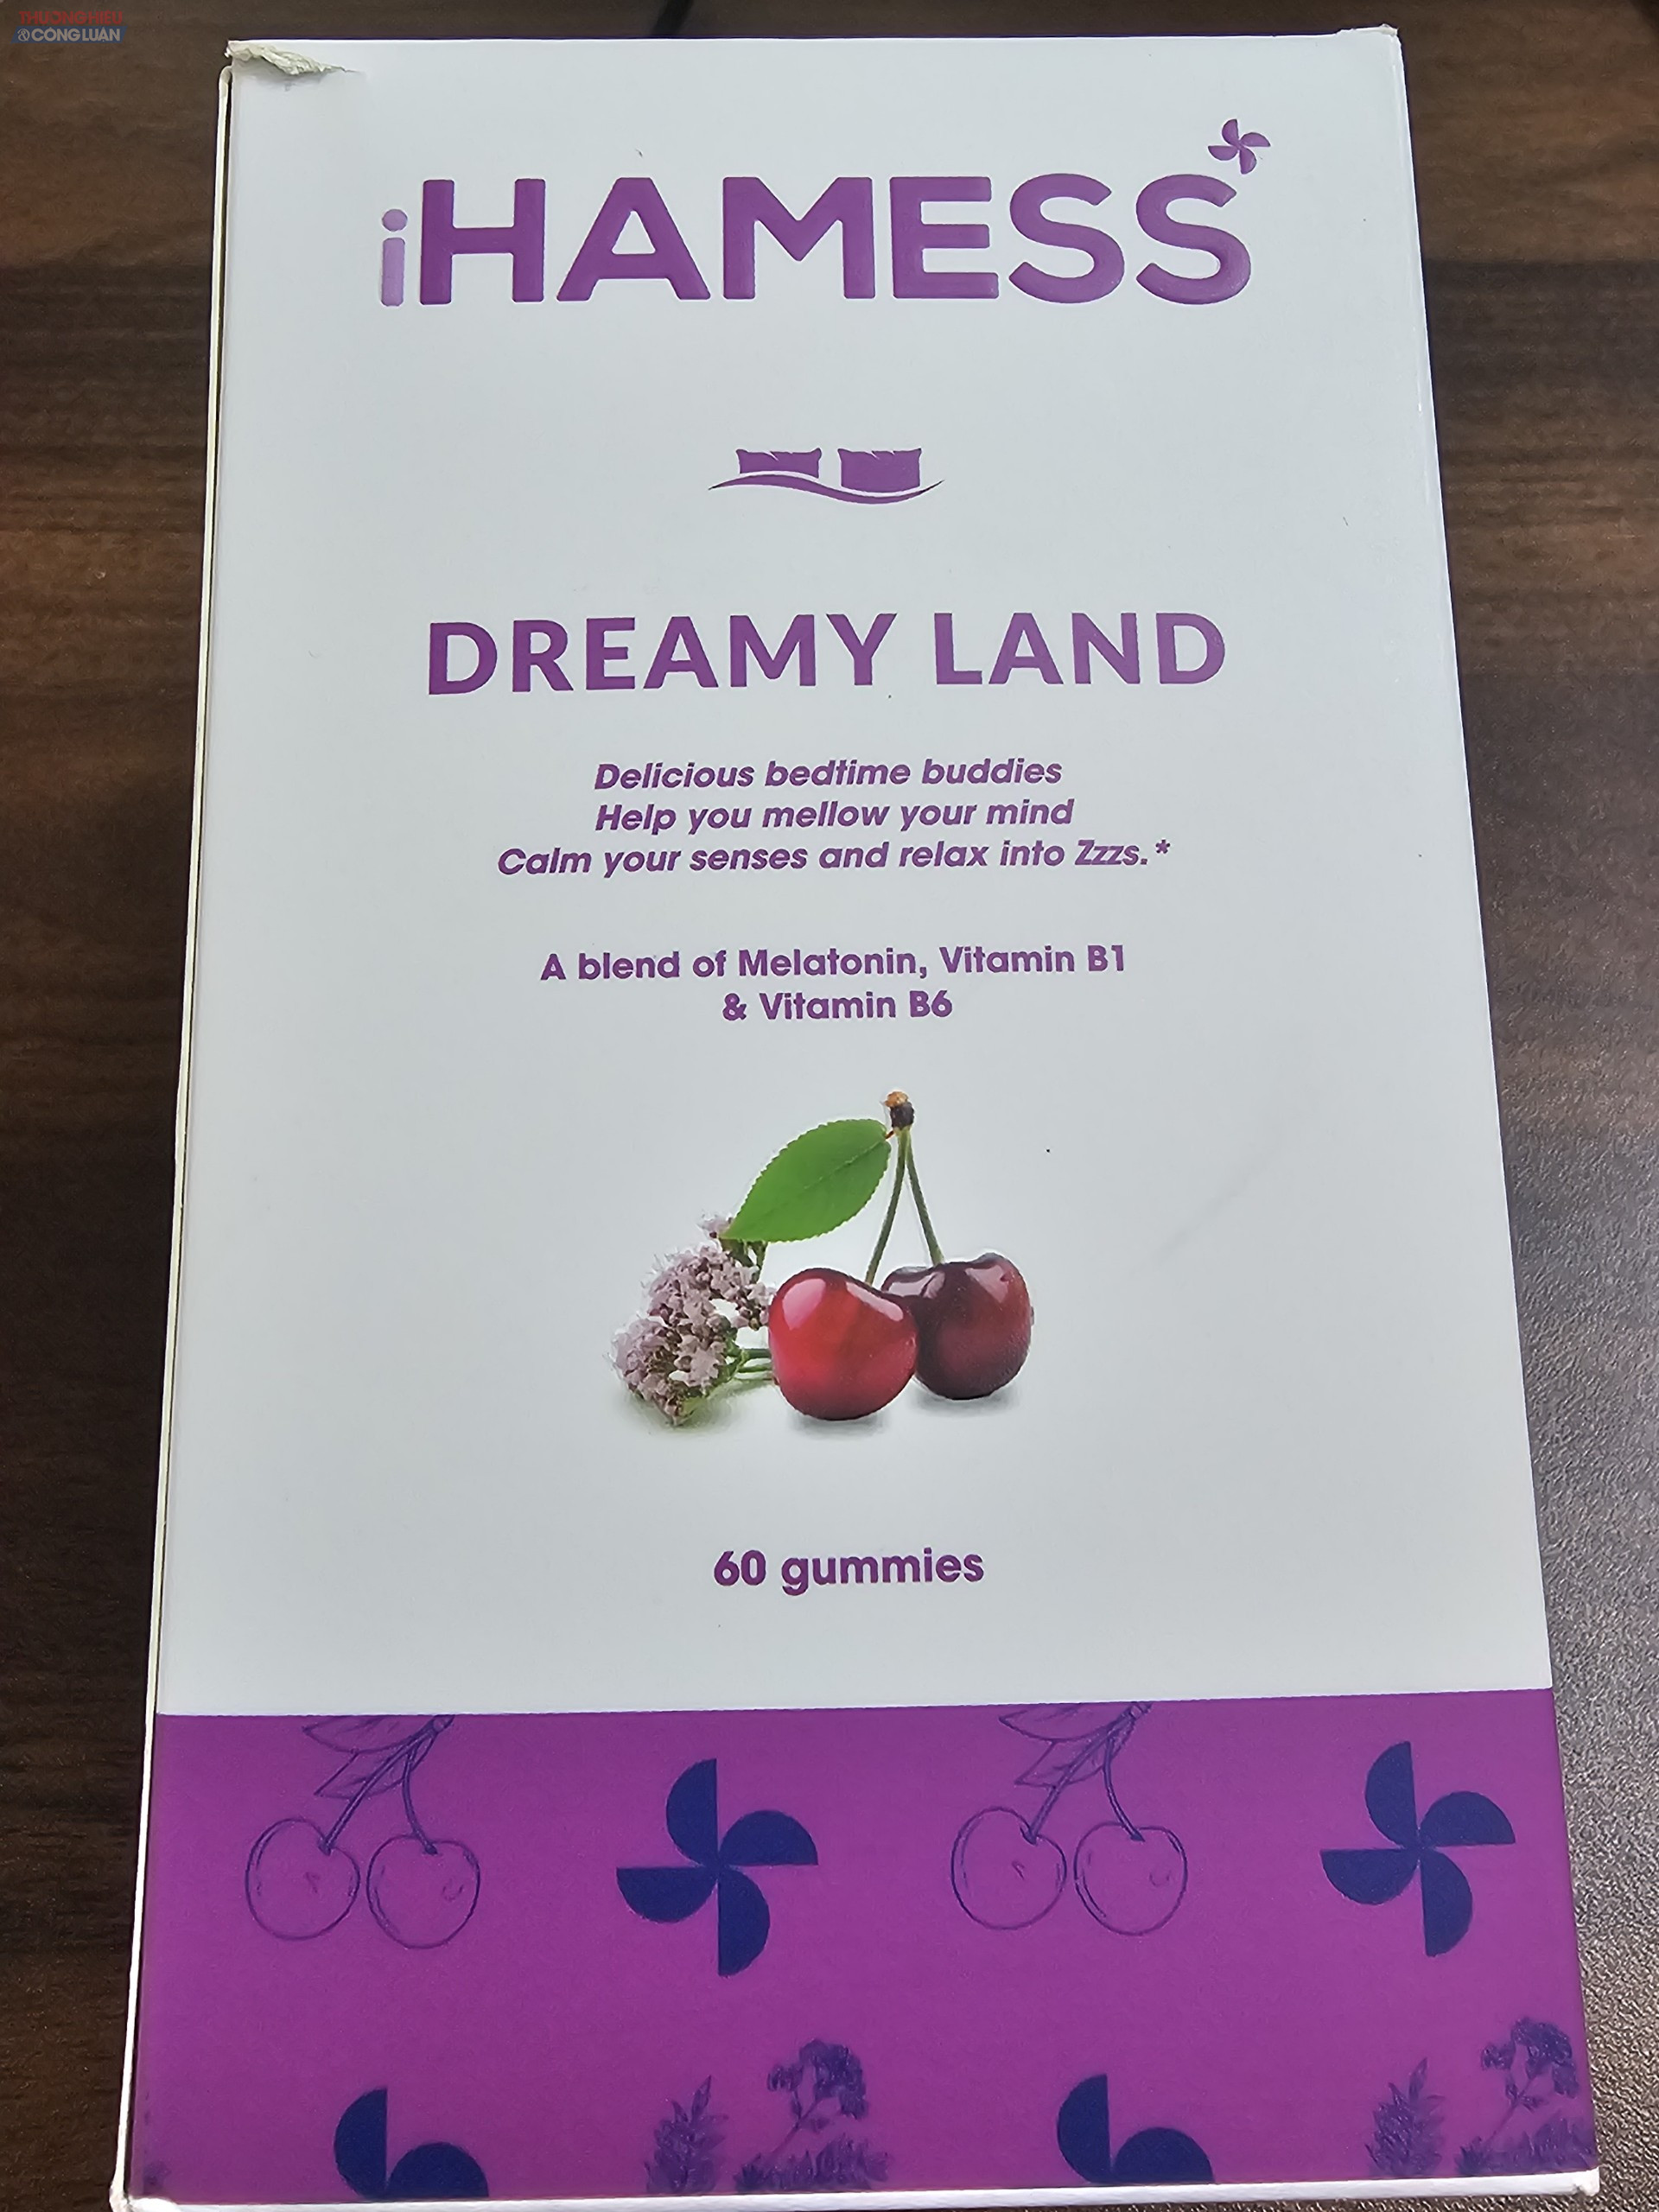 Thực phẩm bổ sung Dream Land (tên gọi khác là kẹo dẹo ngủ ngon iHamess) đang được quảng cáo rầm rộ trên các nền tảng internet với công dụng giúp ngủ ngon